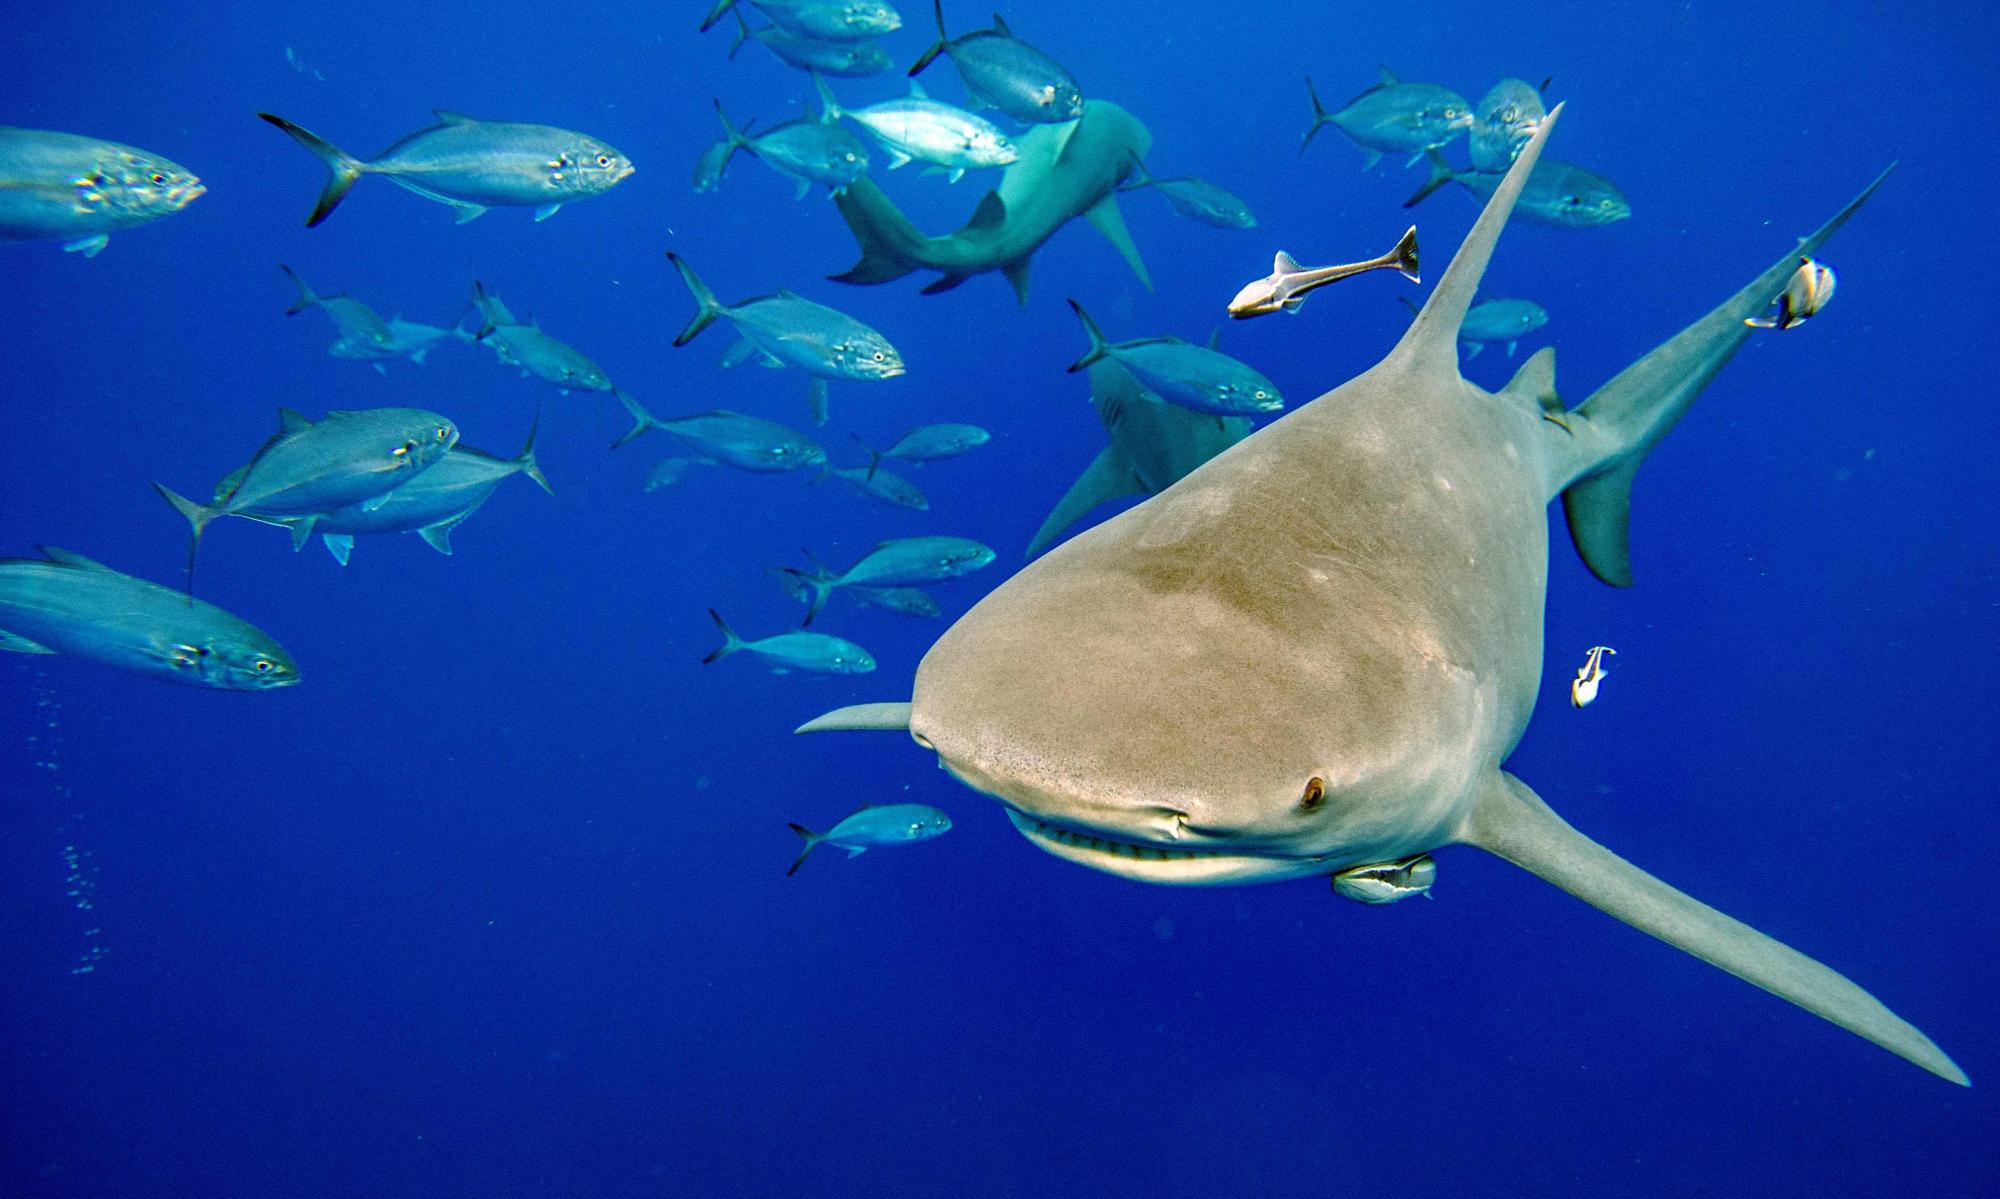 Shark fin trade regulated at last in landmark decision